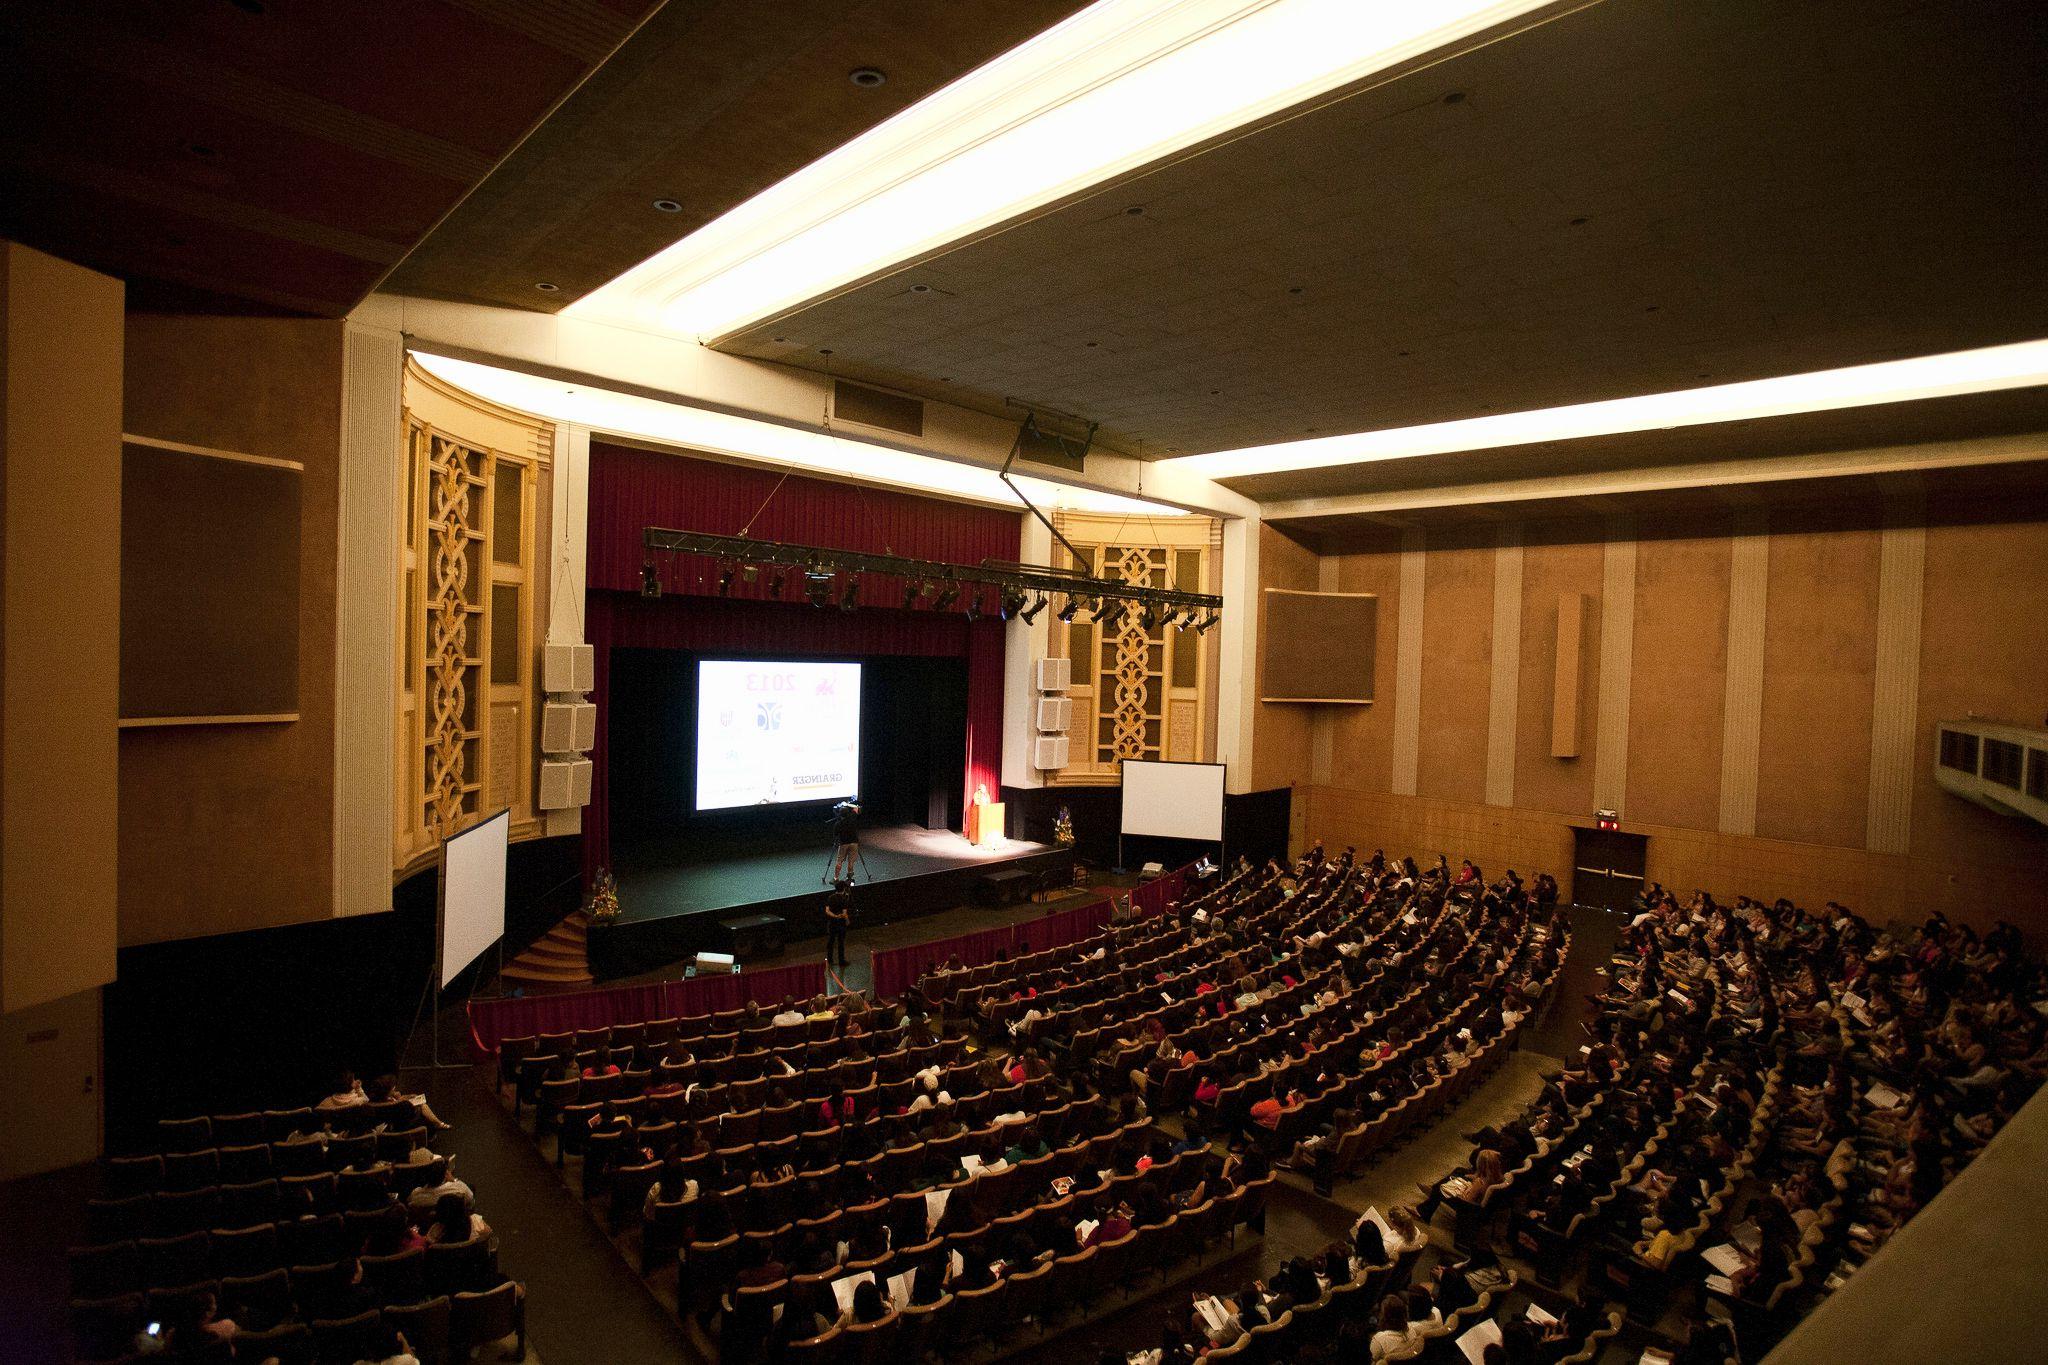 Sexson Auditorium